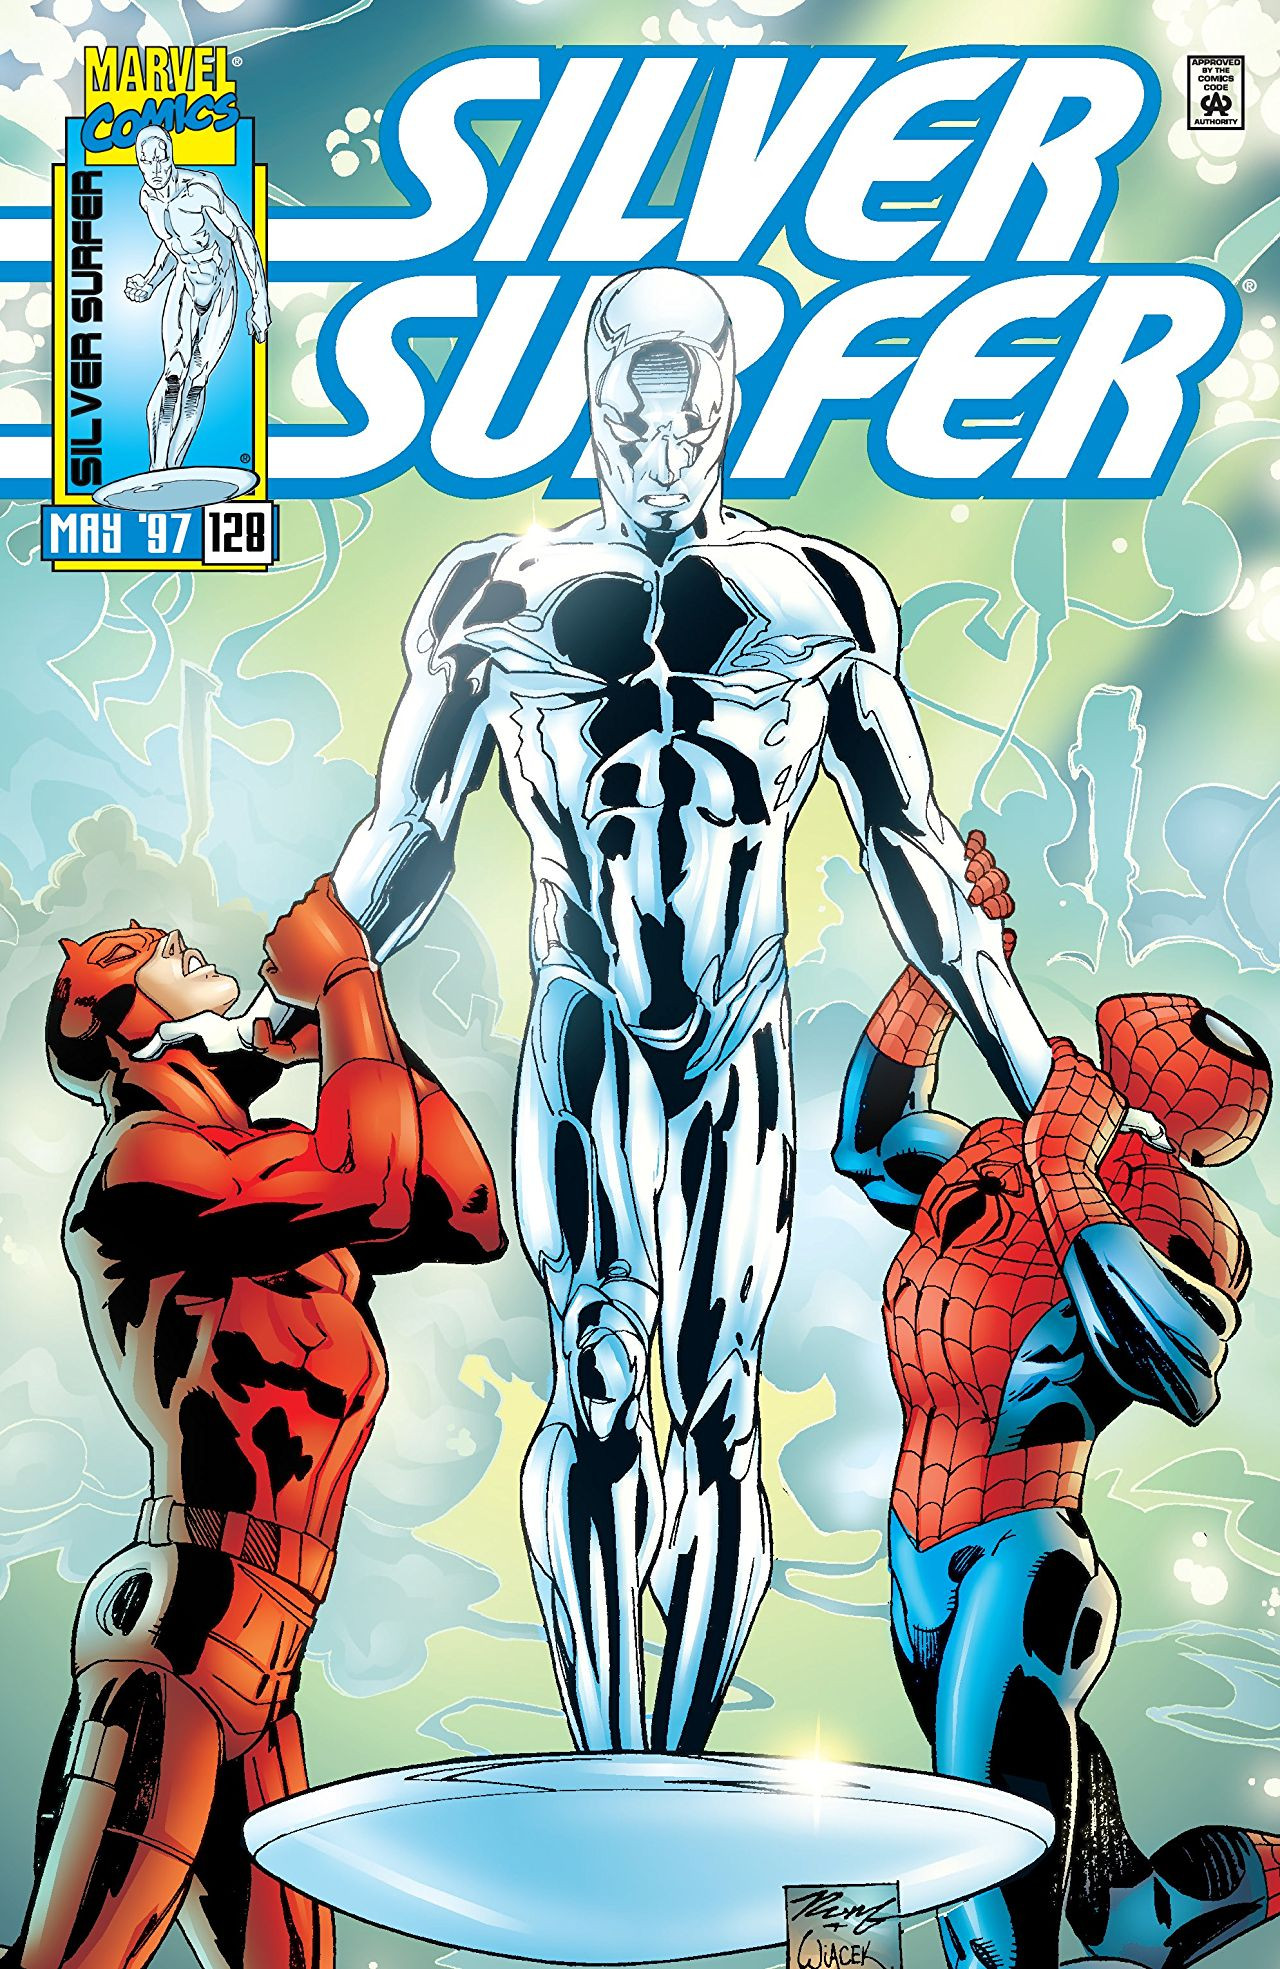 Silver Surfer Vol 3 128 | Marvel Database | Fandom